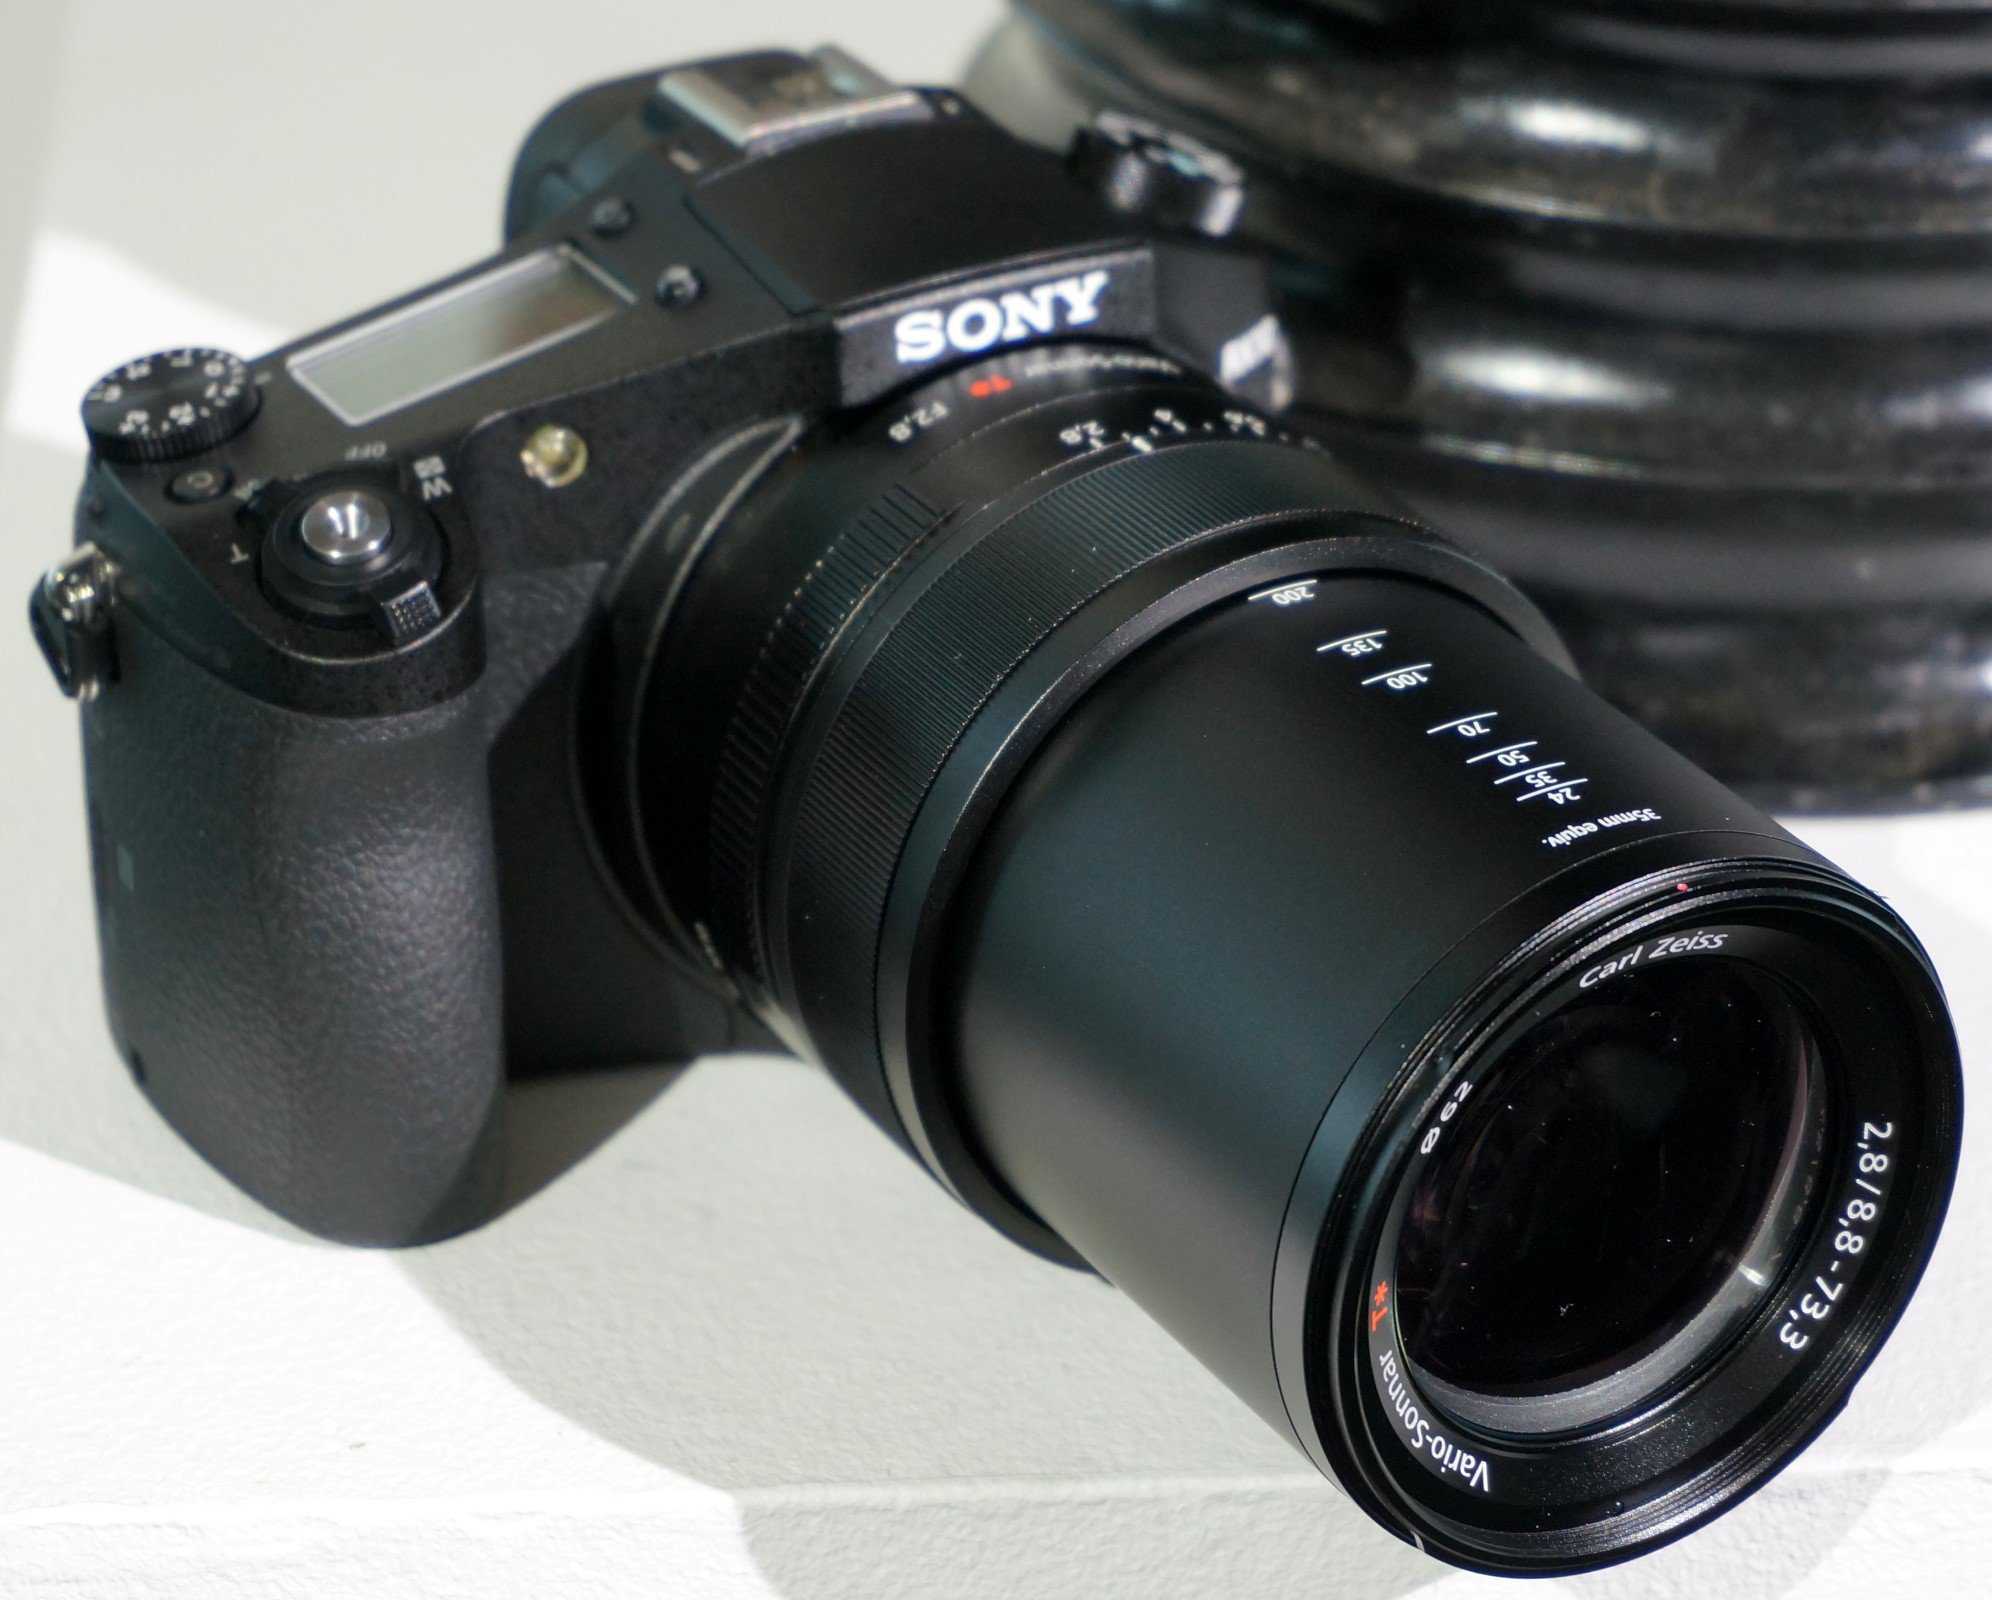 Обзор фотокамеры sony dsc-rx10 ii: универсал класса люкс. cтатьи, тесты, обзоры